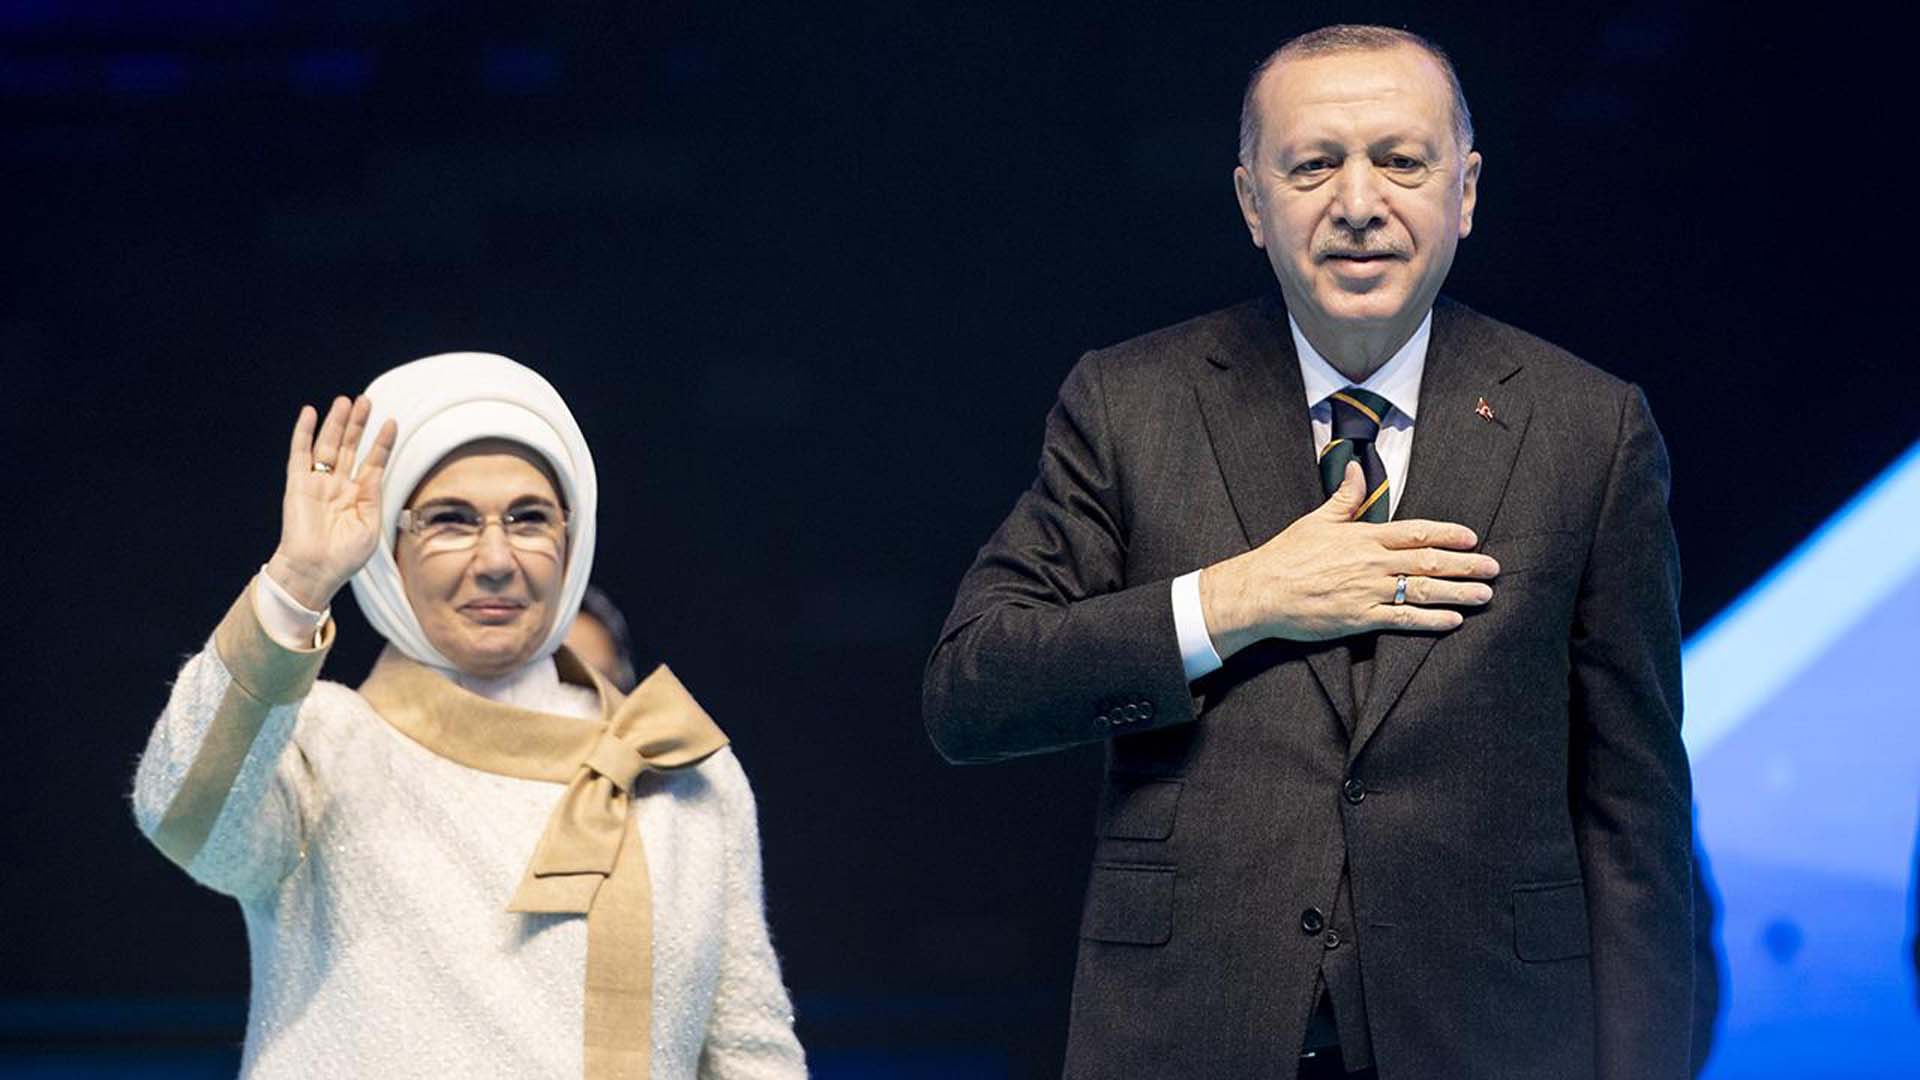 Testi pozitif çıkmıştı! Koronavirüse yakalanan Emine Erdoğan sağlık durumunu açıkladı